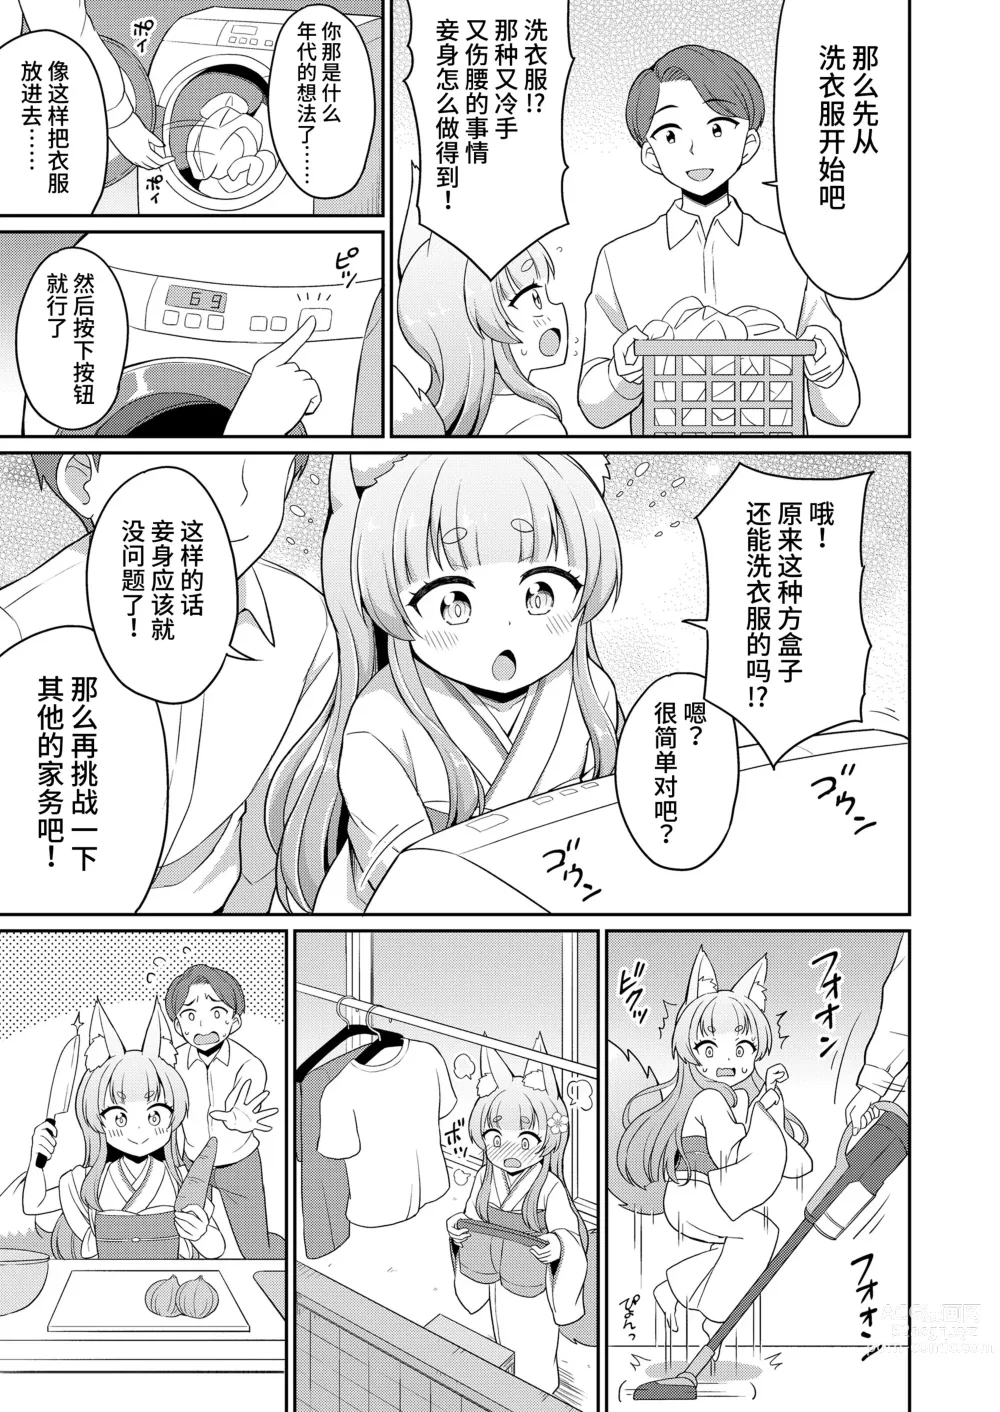 Page 5 of manga 婚活 1-2